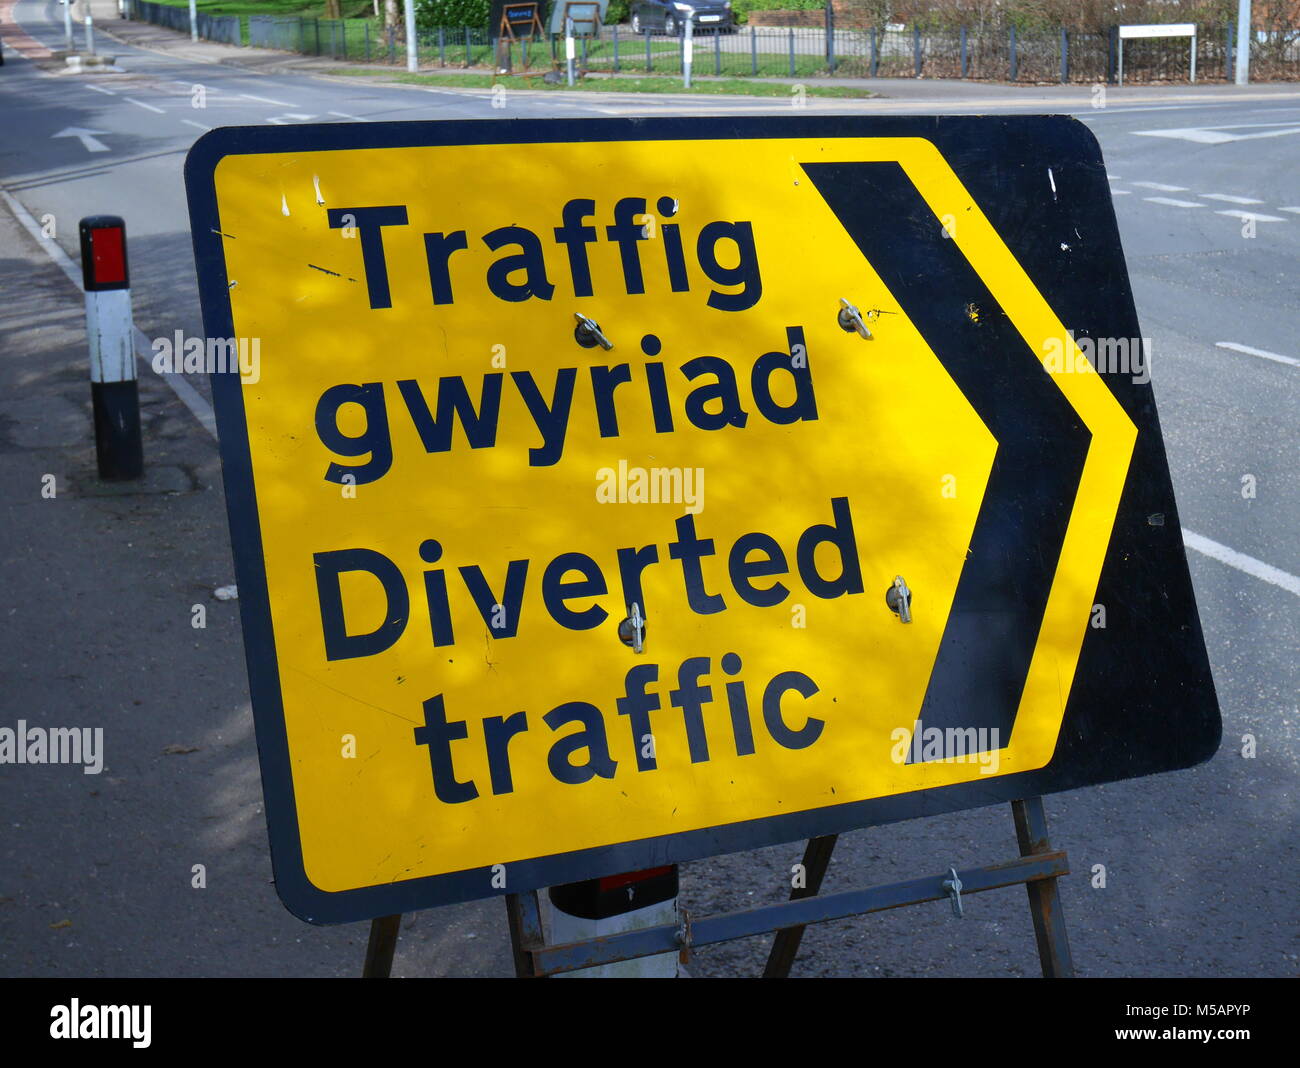 Bilingue, anglais et gallois, temoory panneau routier indiquant le trafic détourné le trafic, gwyriad, sur une route de Rhiwbina, Cardiff Banque D'Images